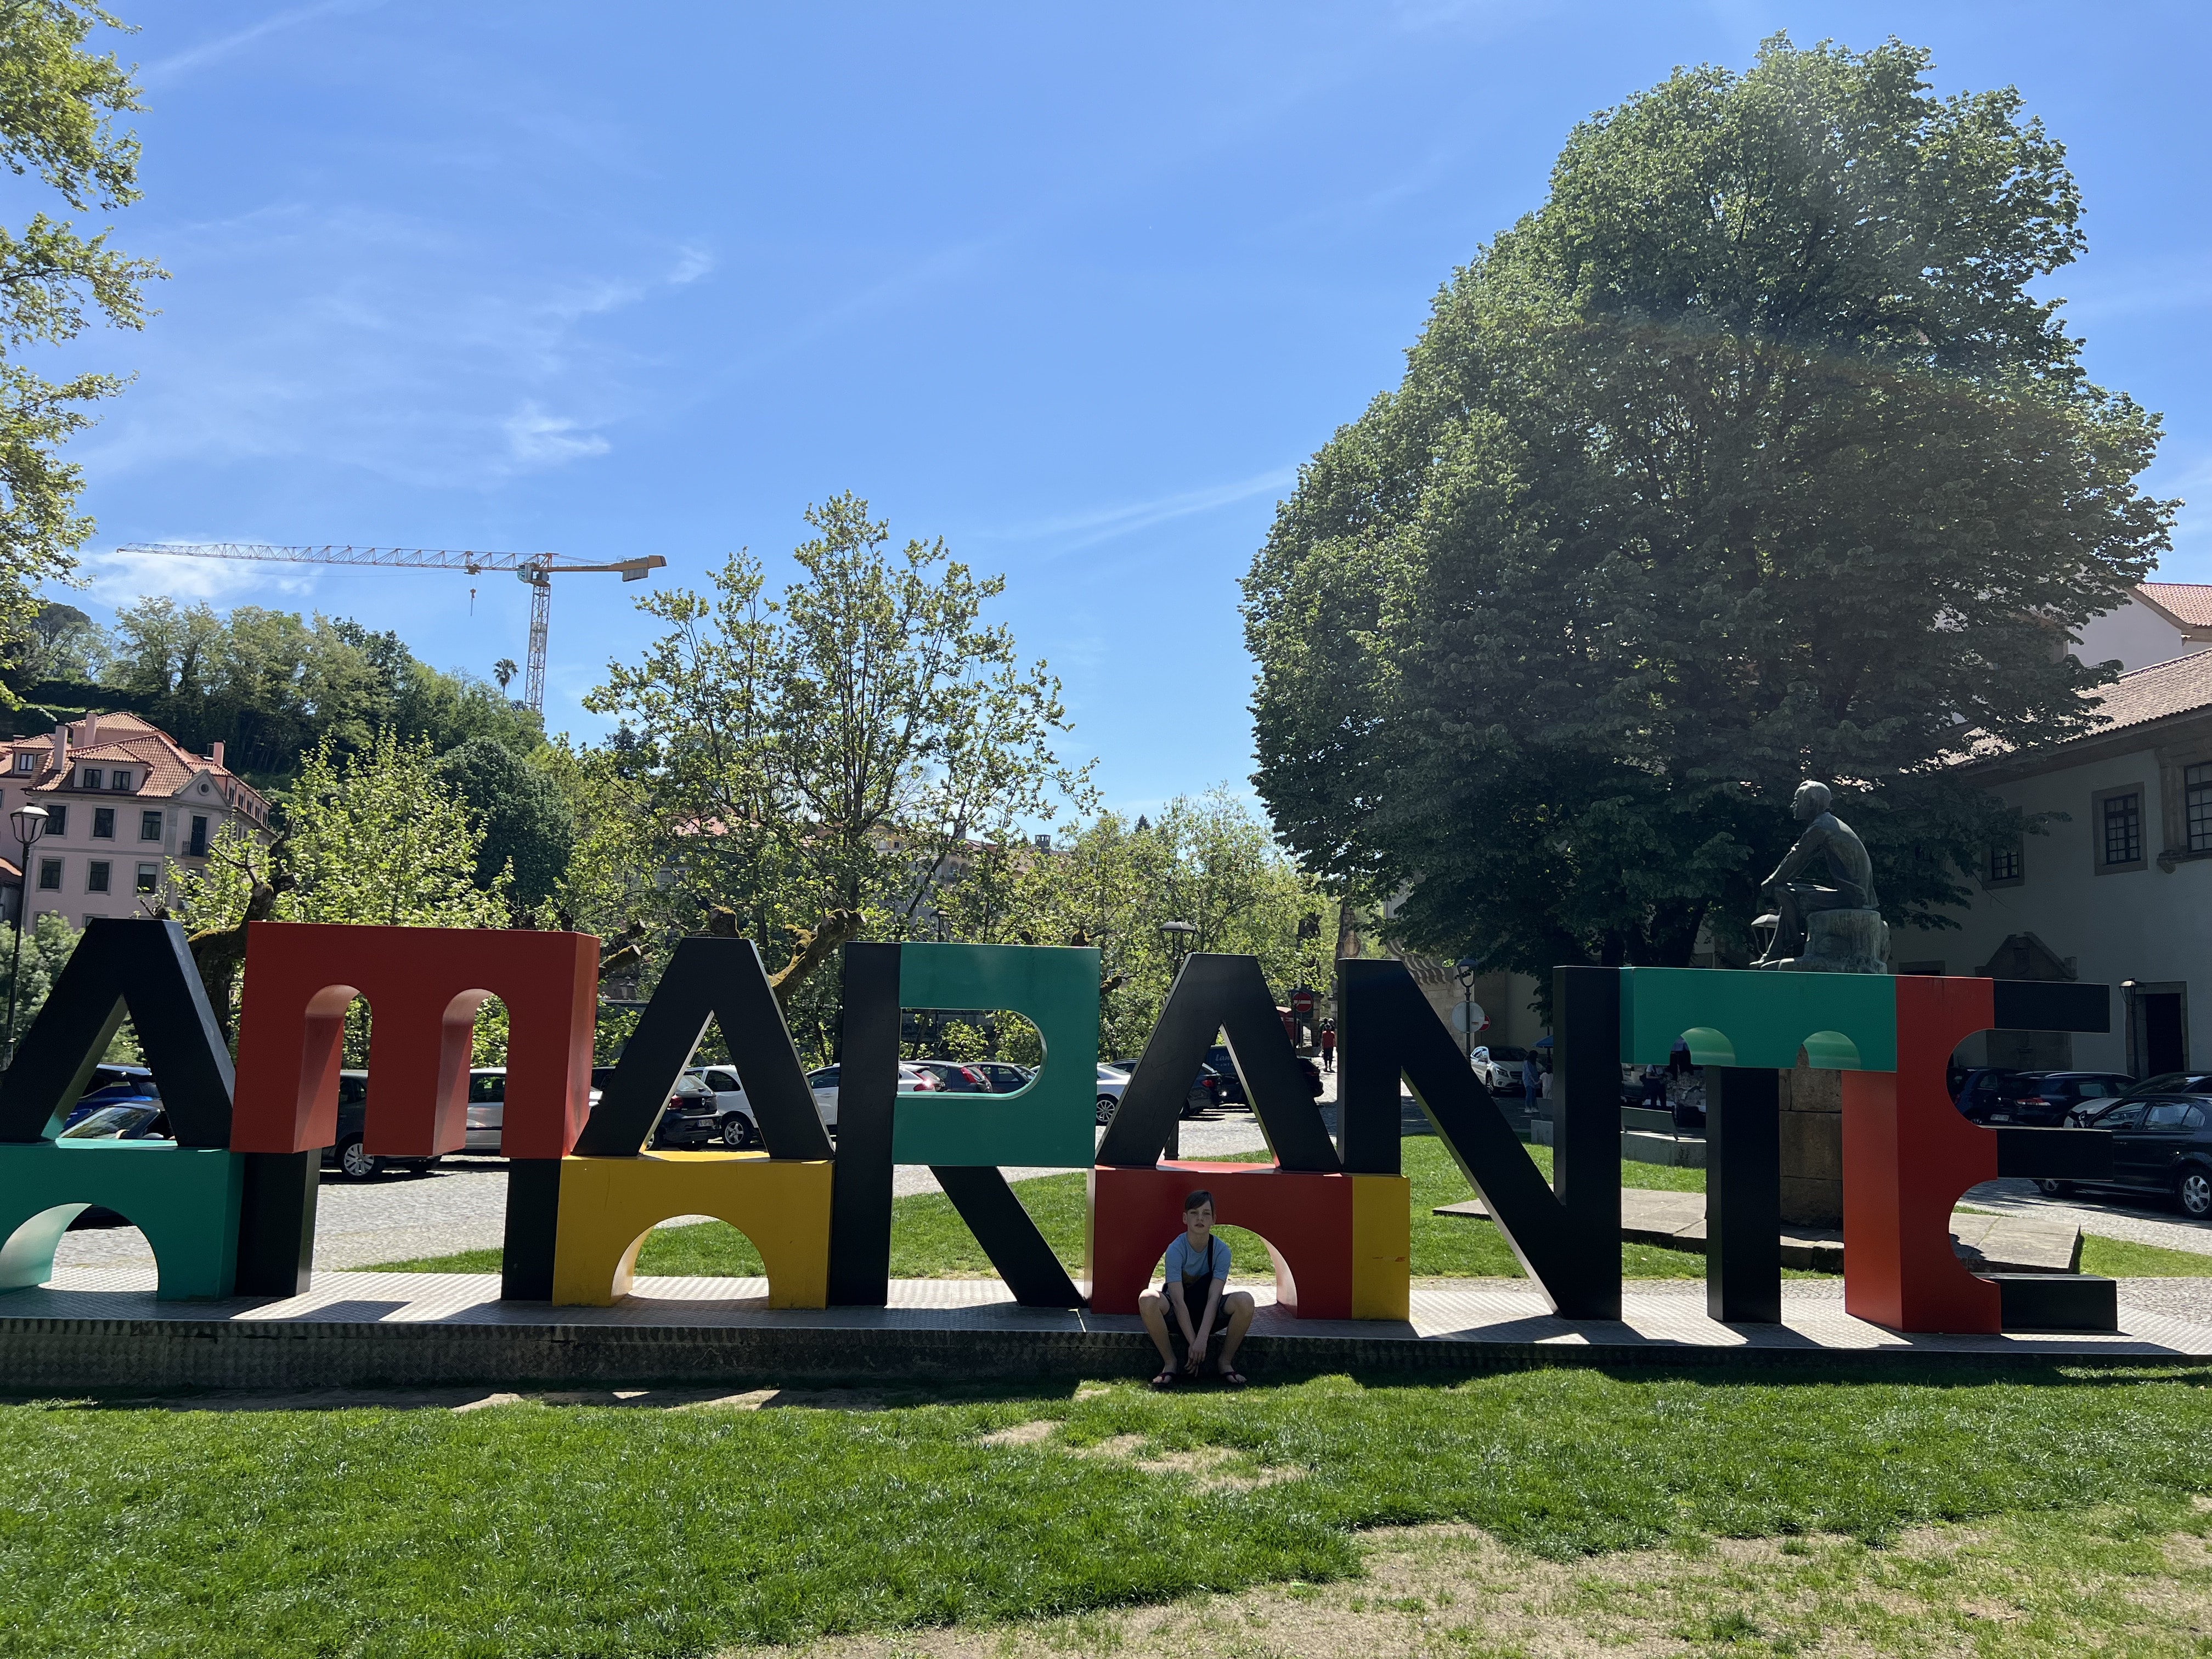 Amarante – Ein Reisebericht über die malerische Stadt auf dem Weg ins Douro-Tal